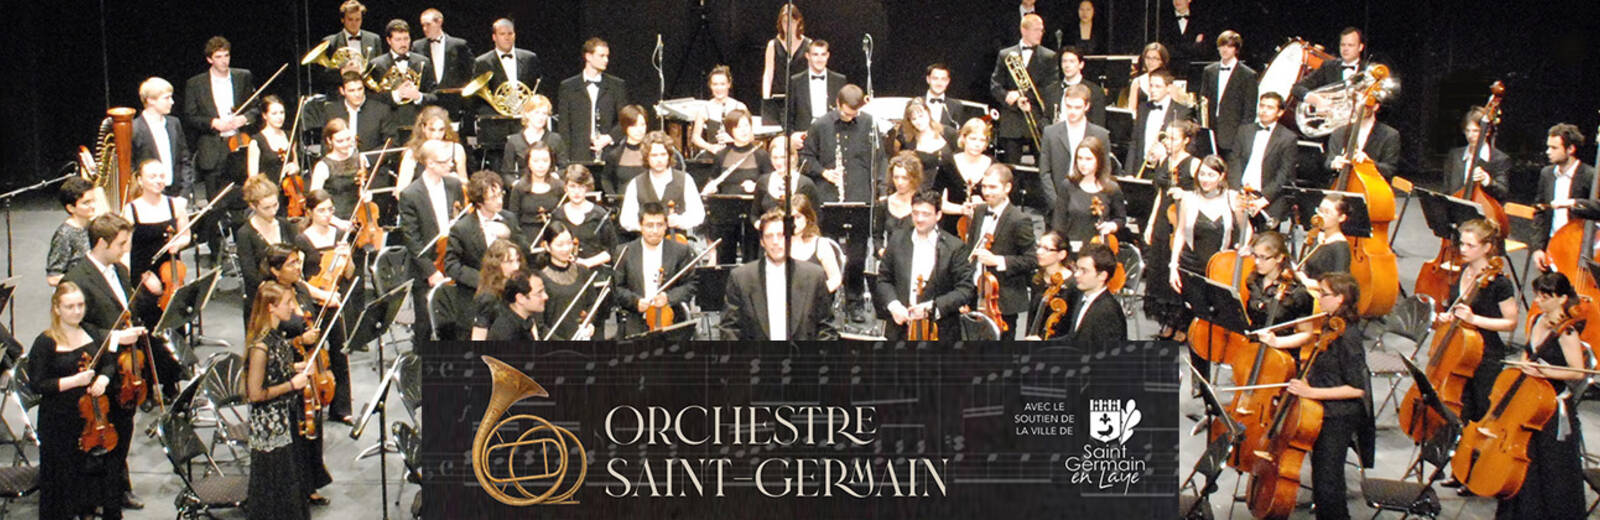 Orchestre Saint-Germain